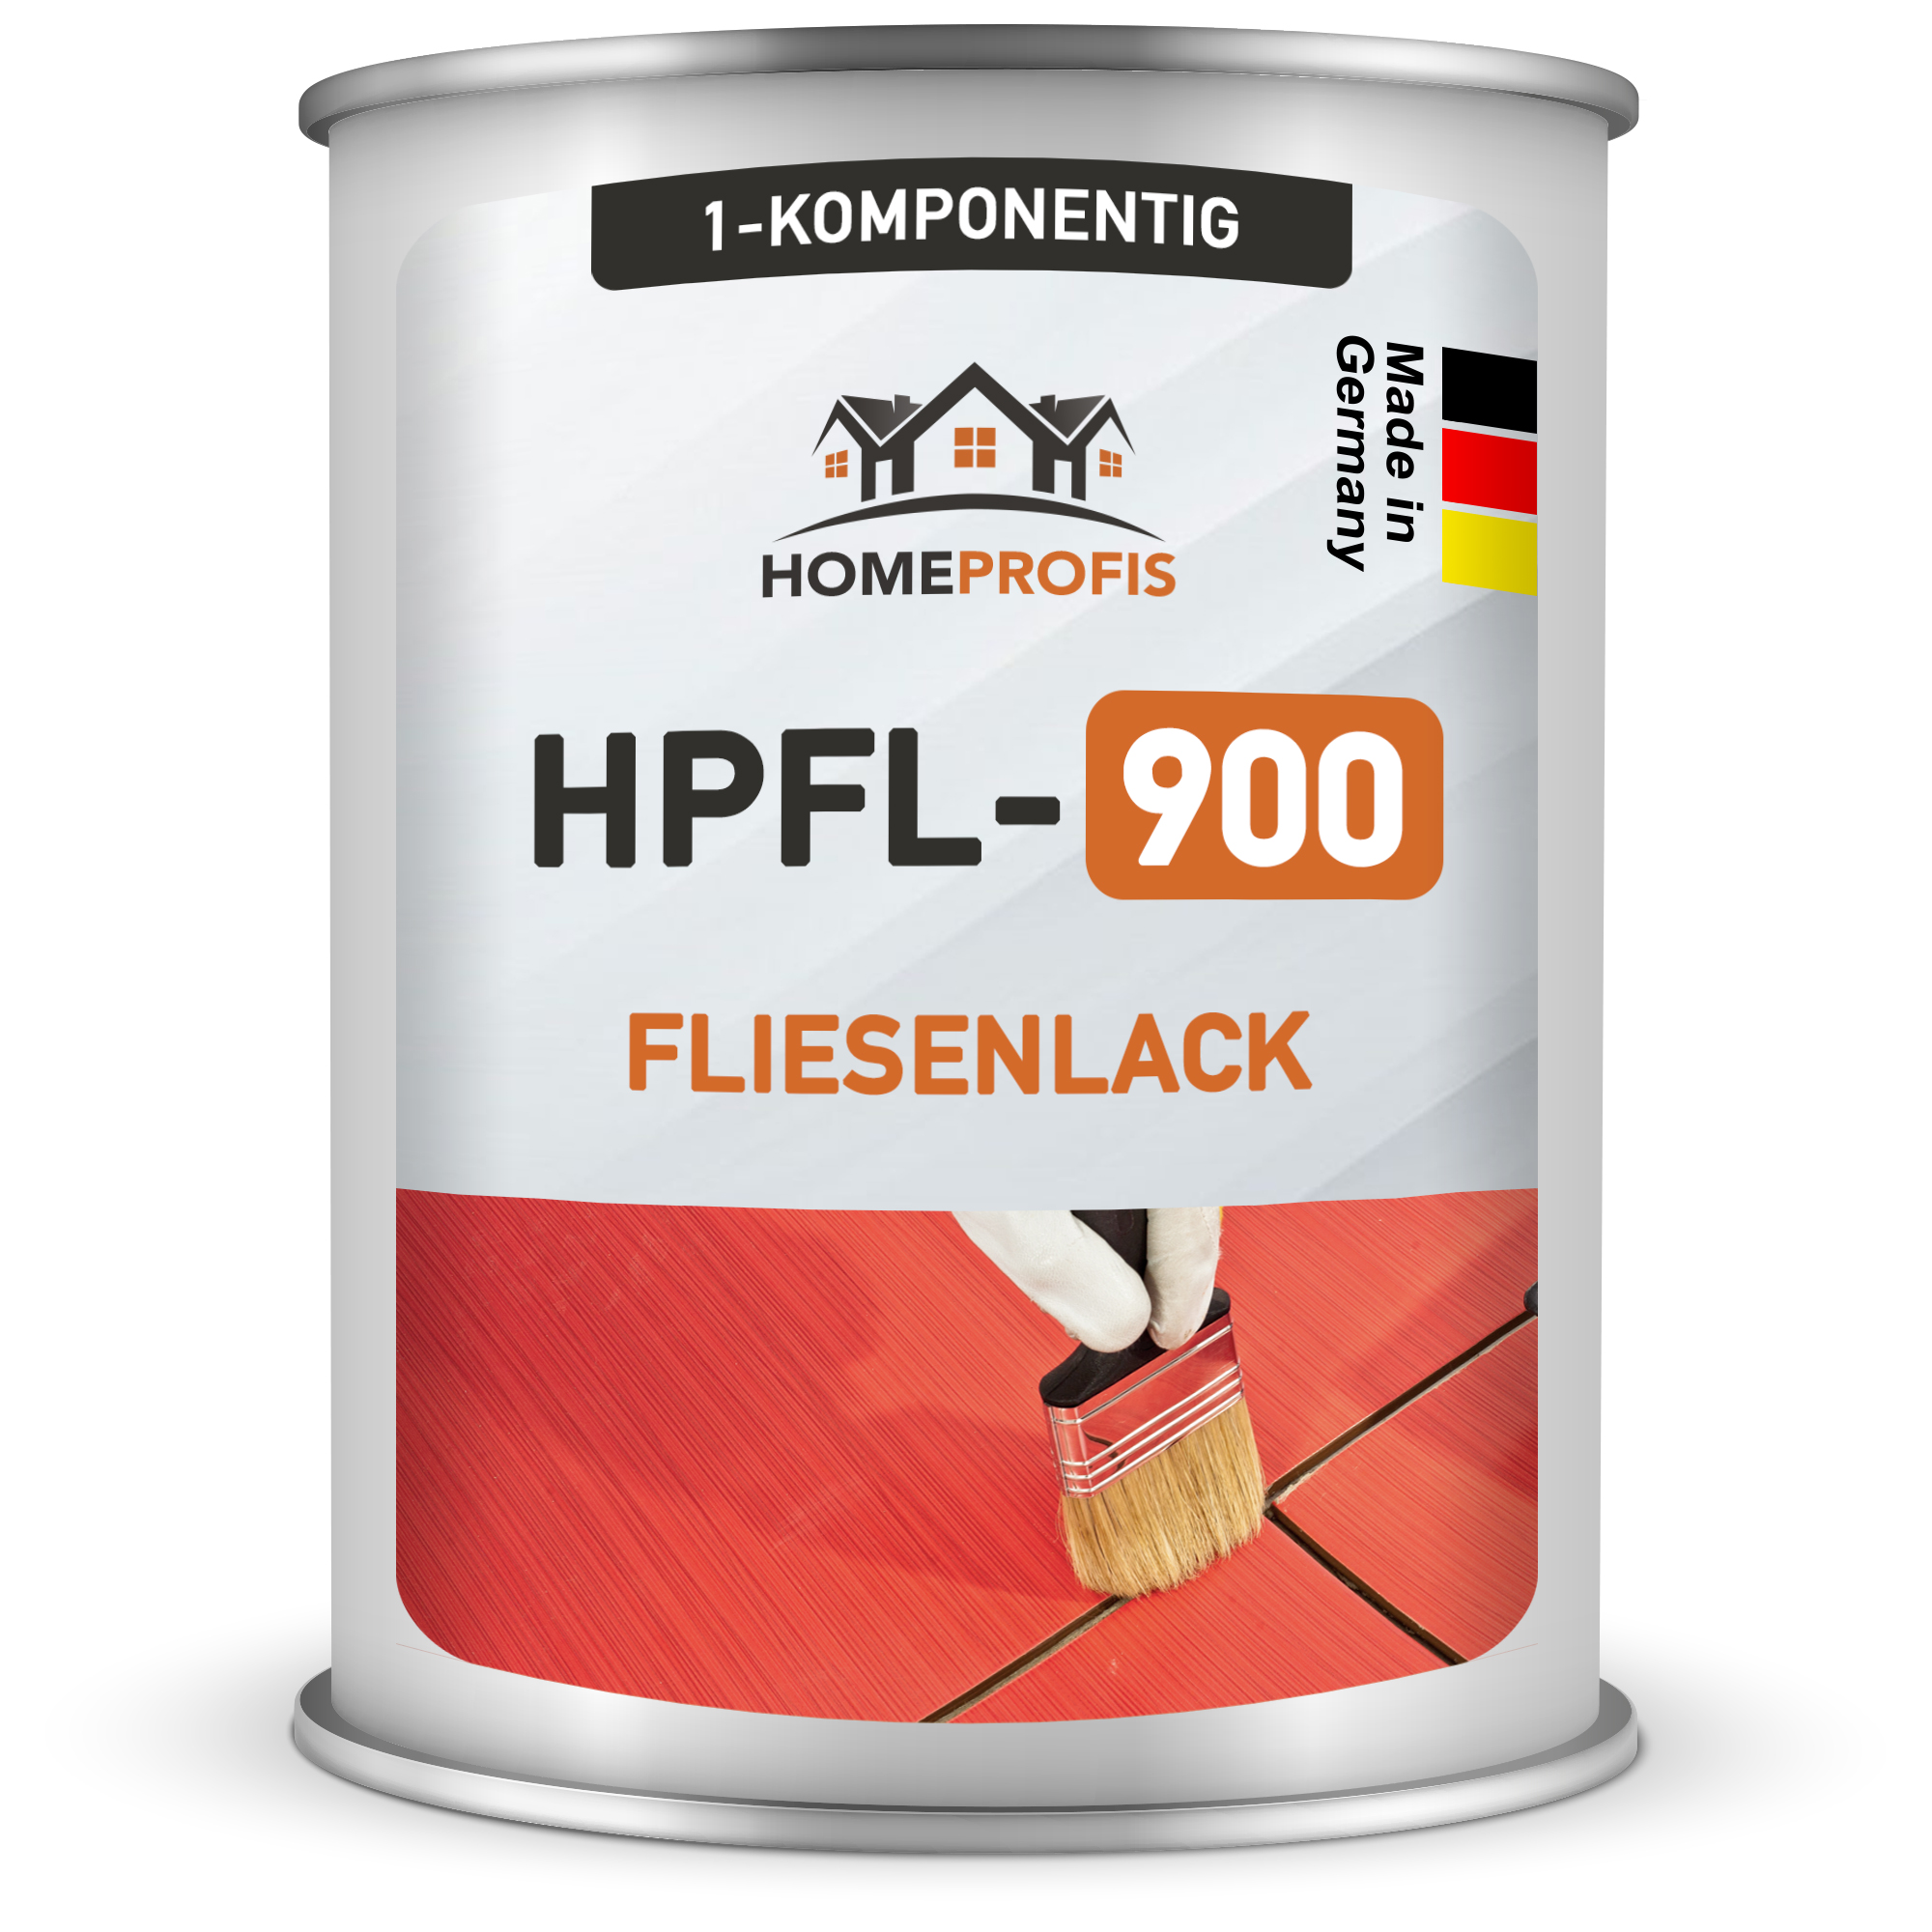 HPFL-900 Fliesenlack